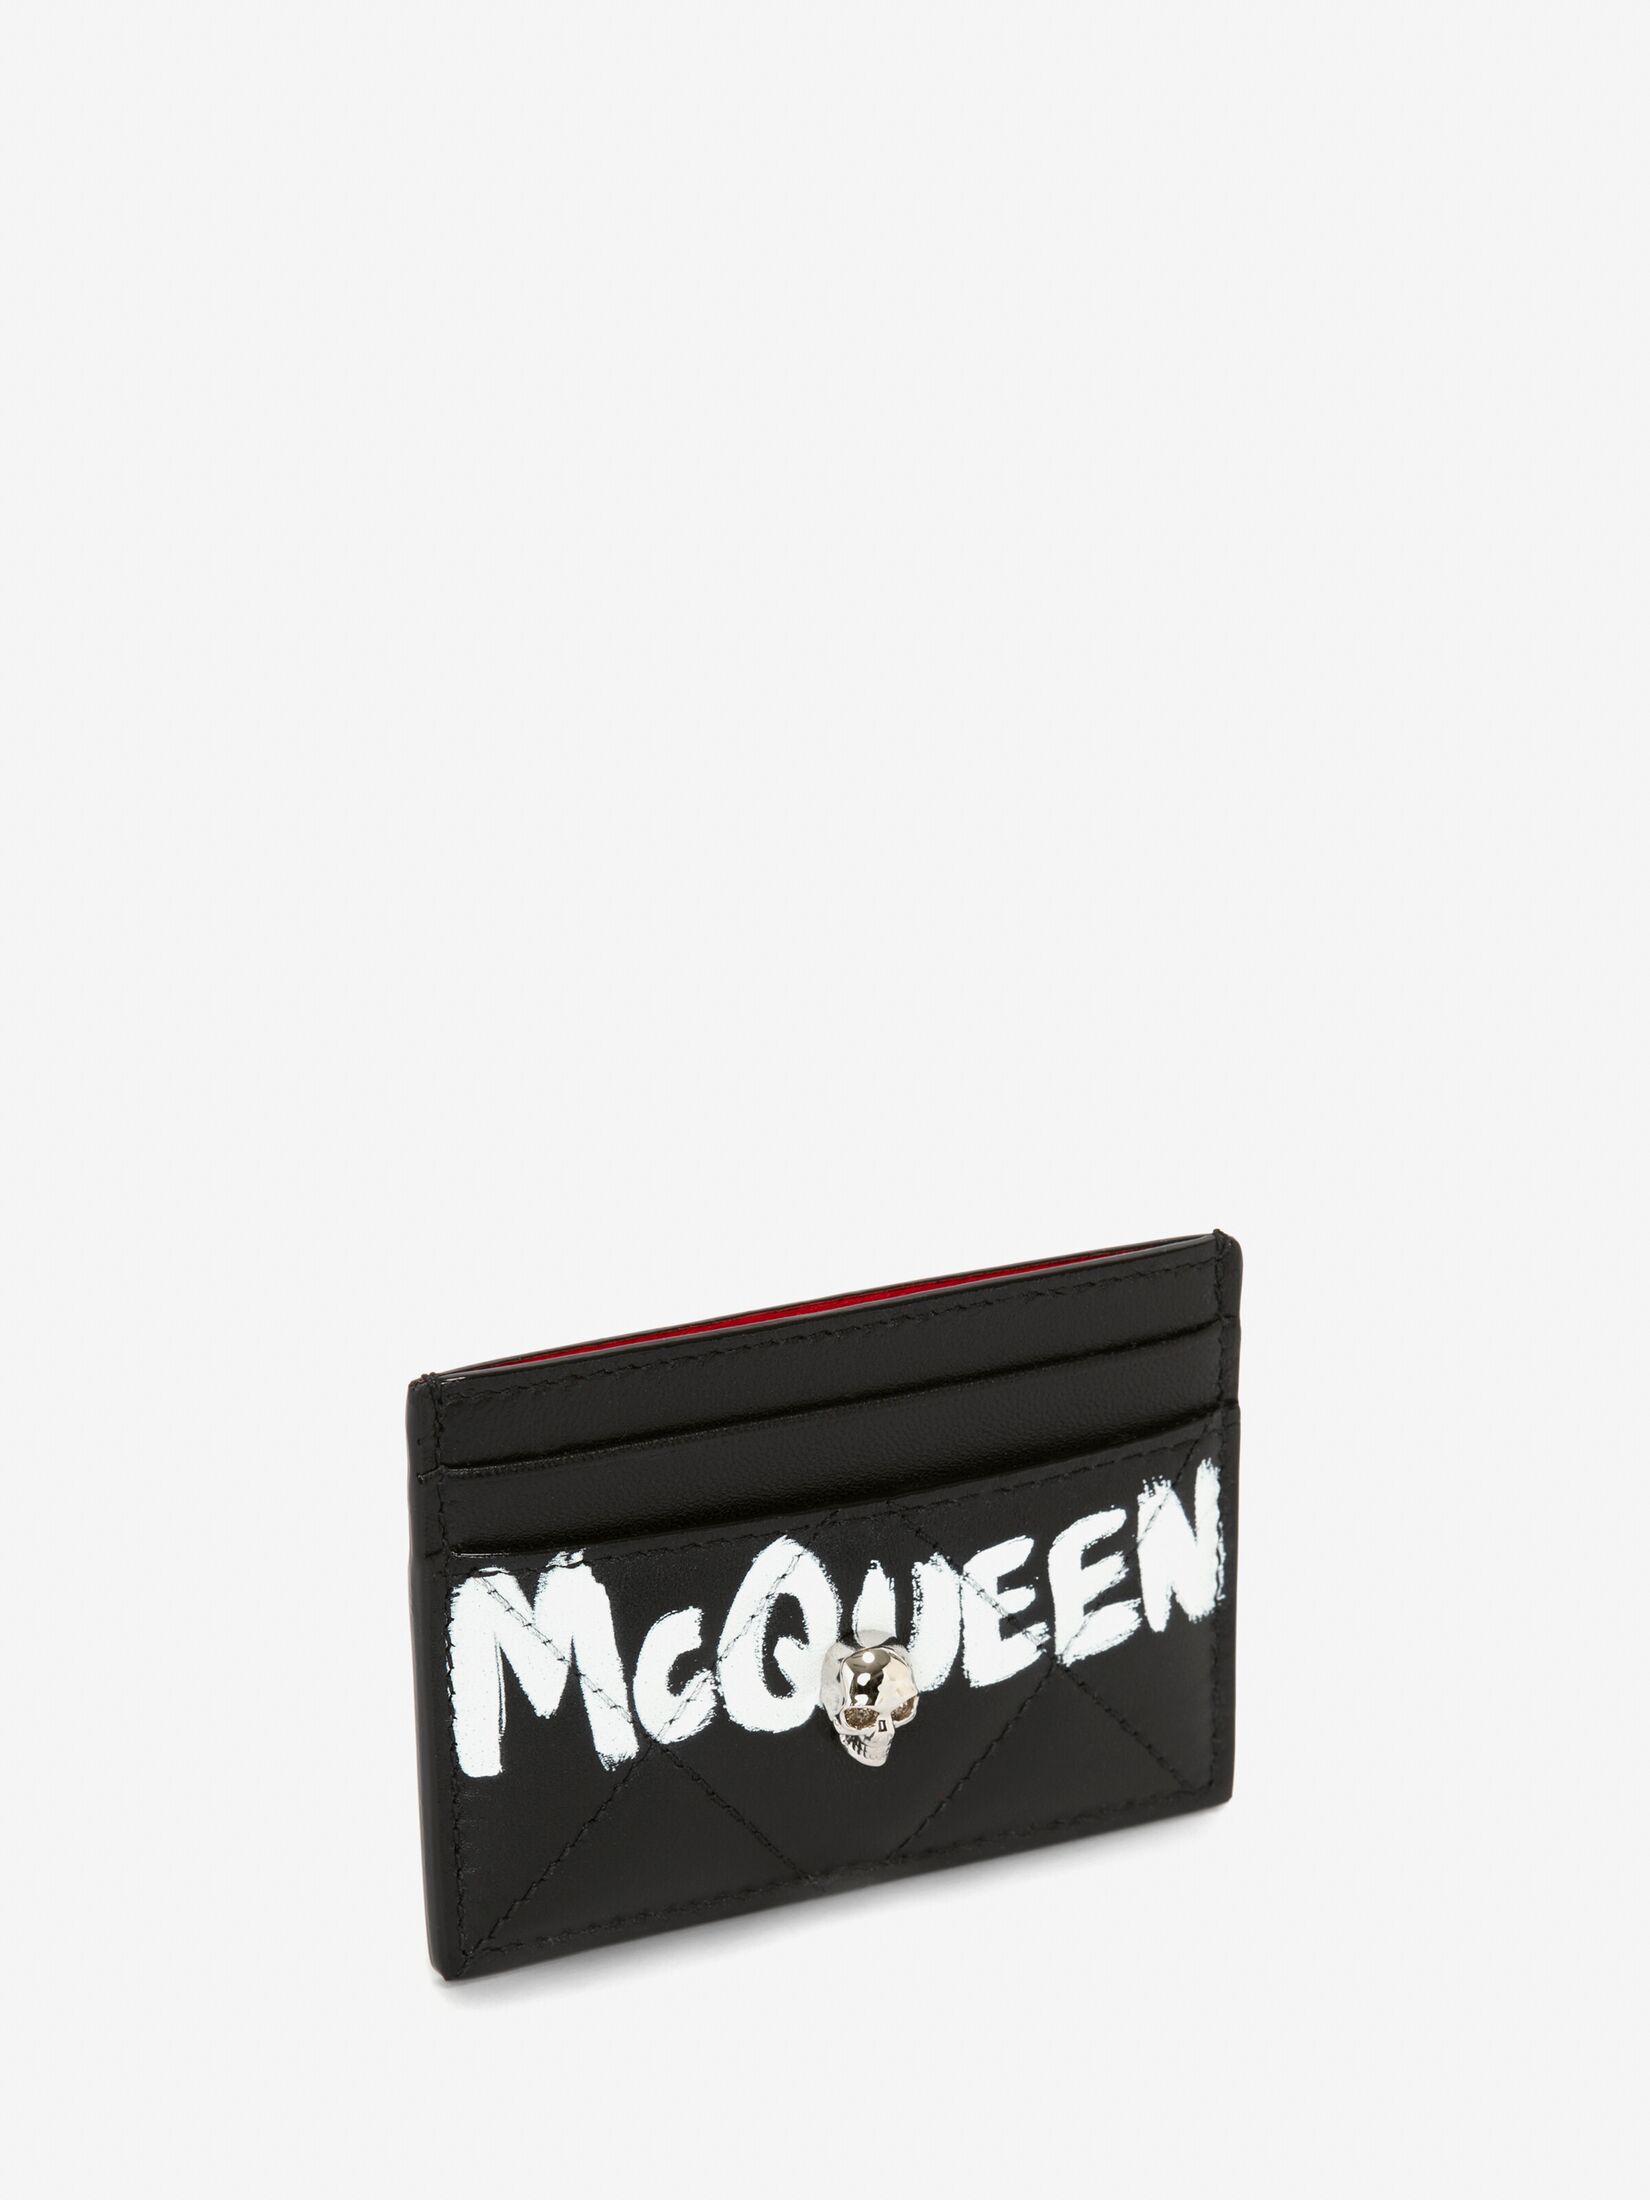 McQueen Graffiti カードホルダー | ブラック/ホワイト | Alexander 